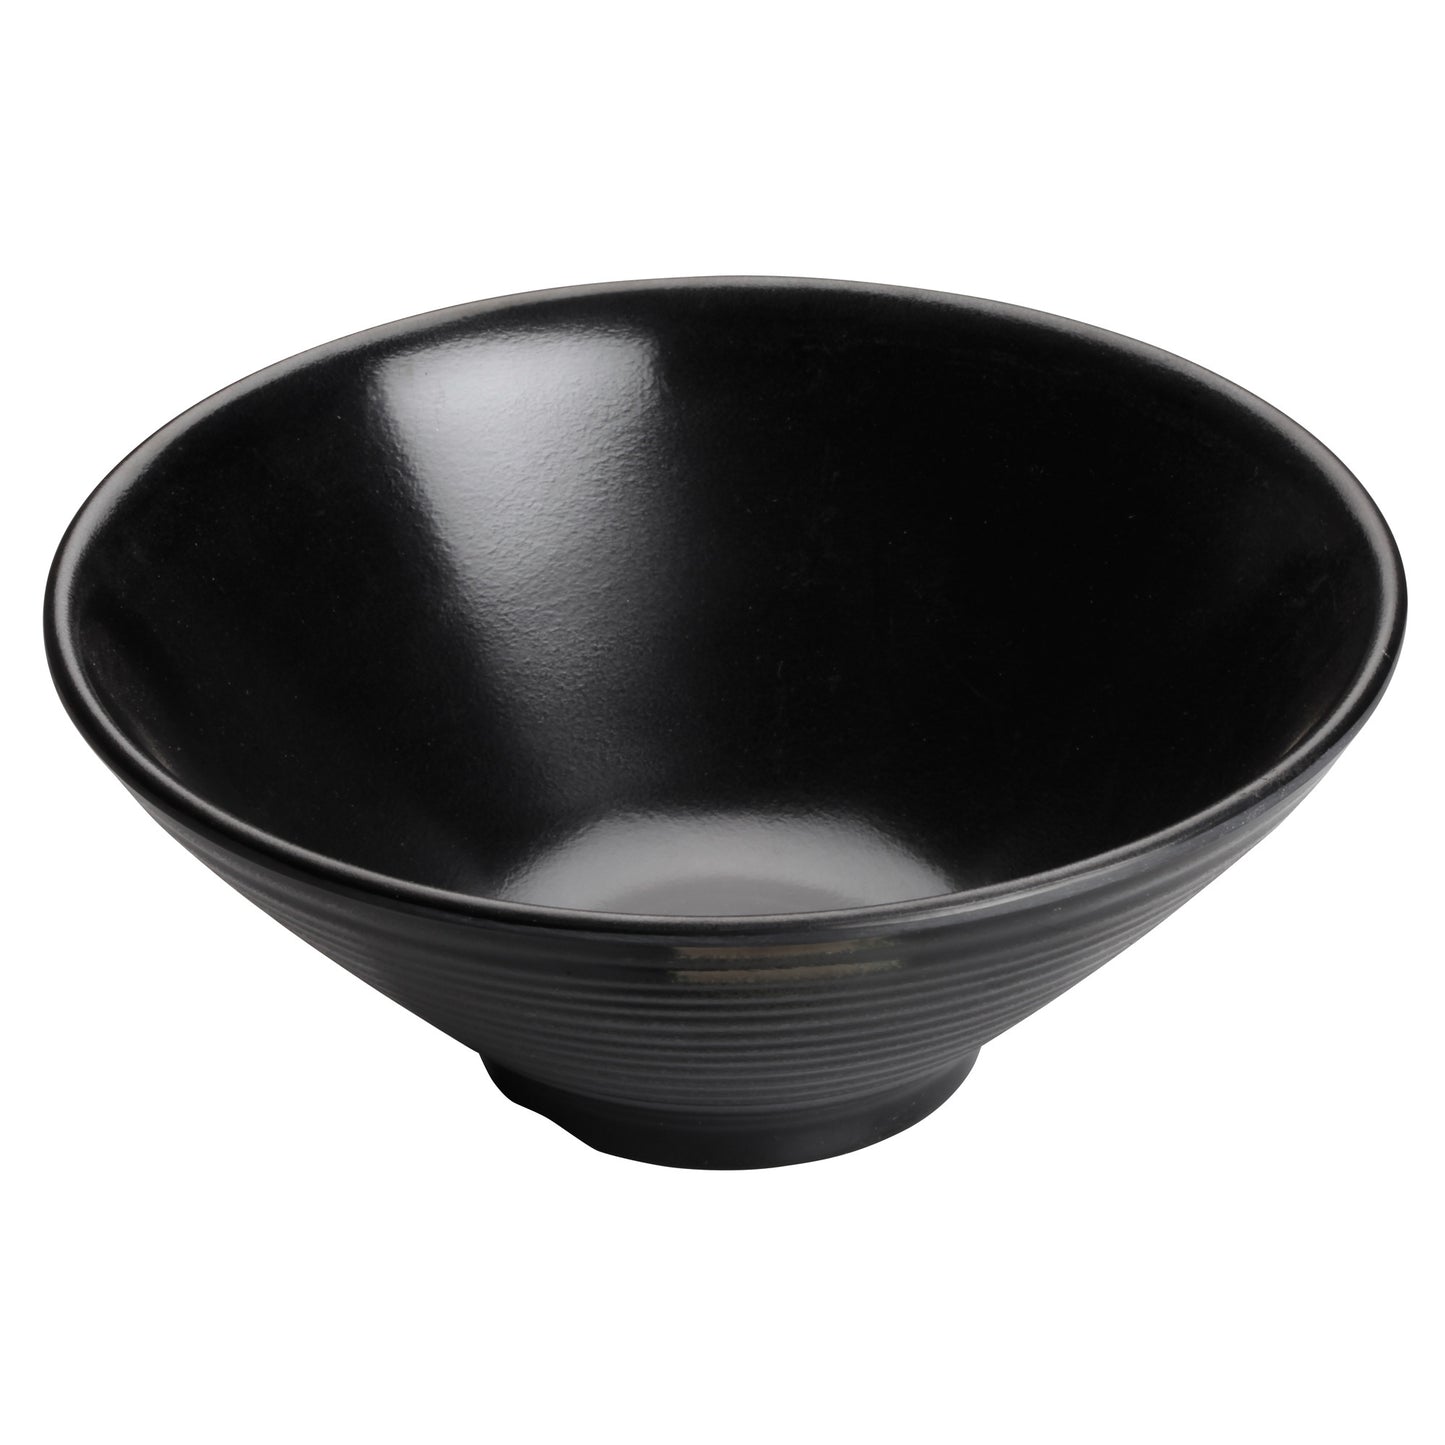 WDM014-303 - 8"Dia Melamine Bowl, Black, 24pcs/case